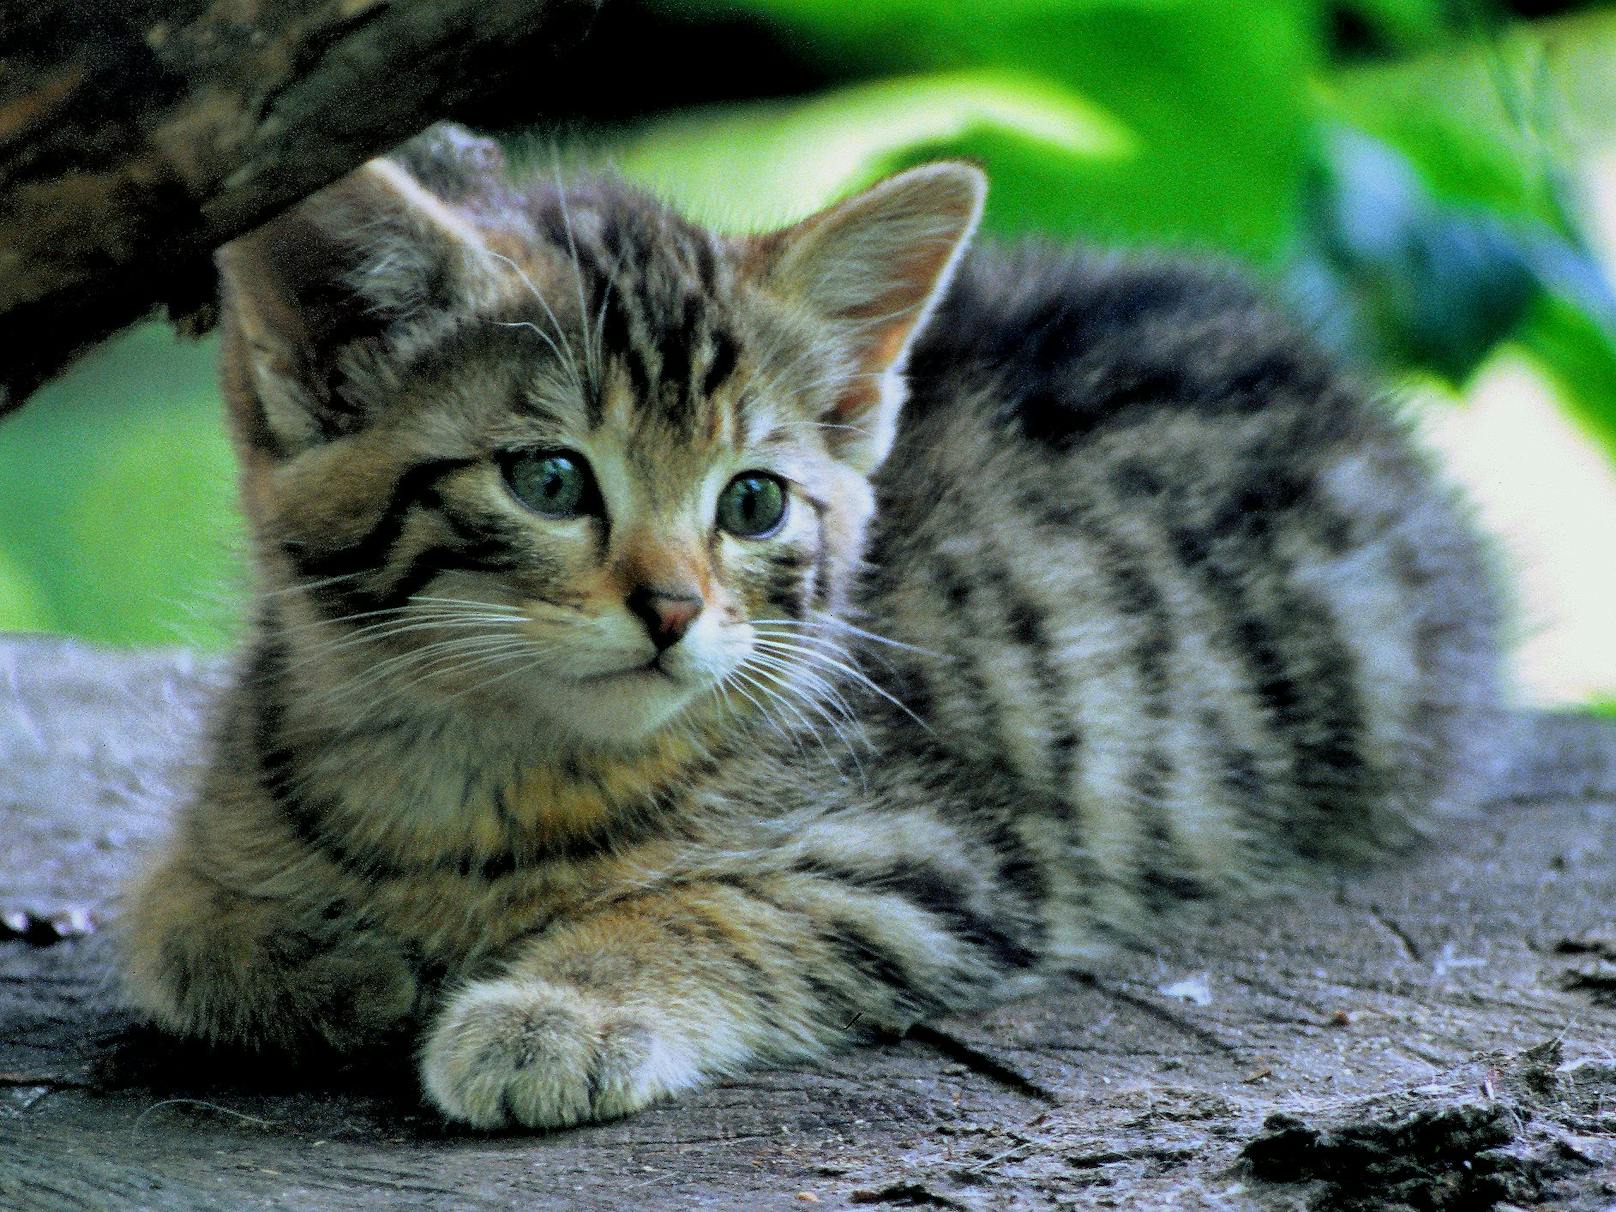 Frohe Botschaft im Naturschutz.&nbsp;Die Wildkatzen-Population in der Wachau ist im Wachsen, berichtet der Naturschutzbund.